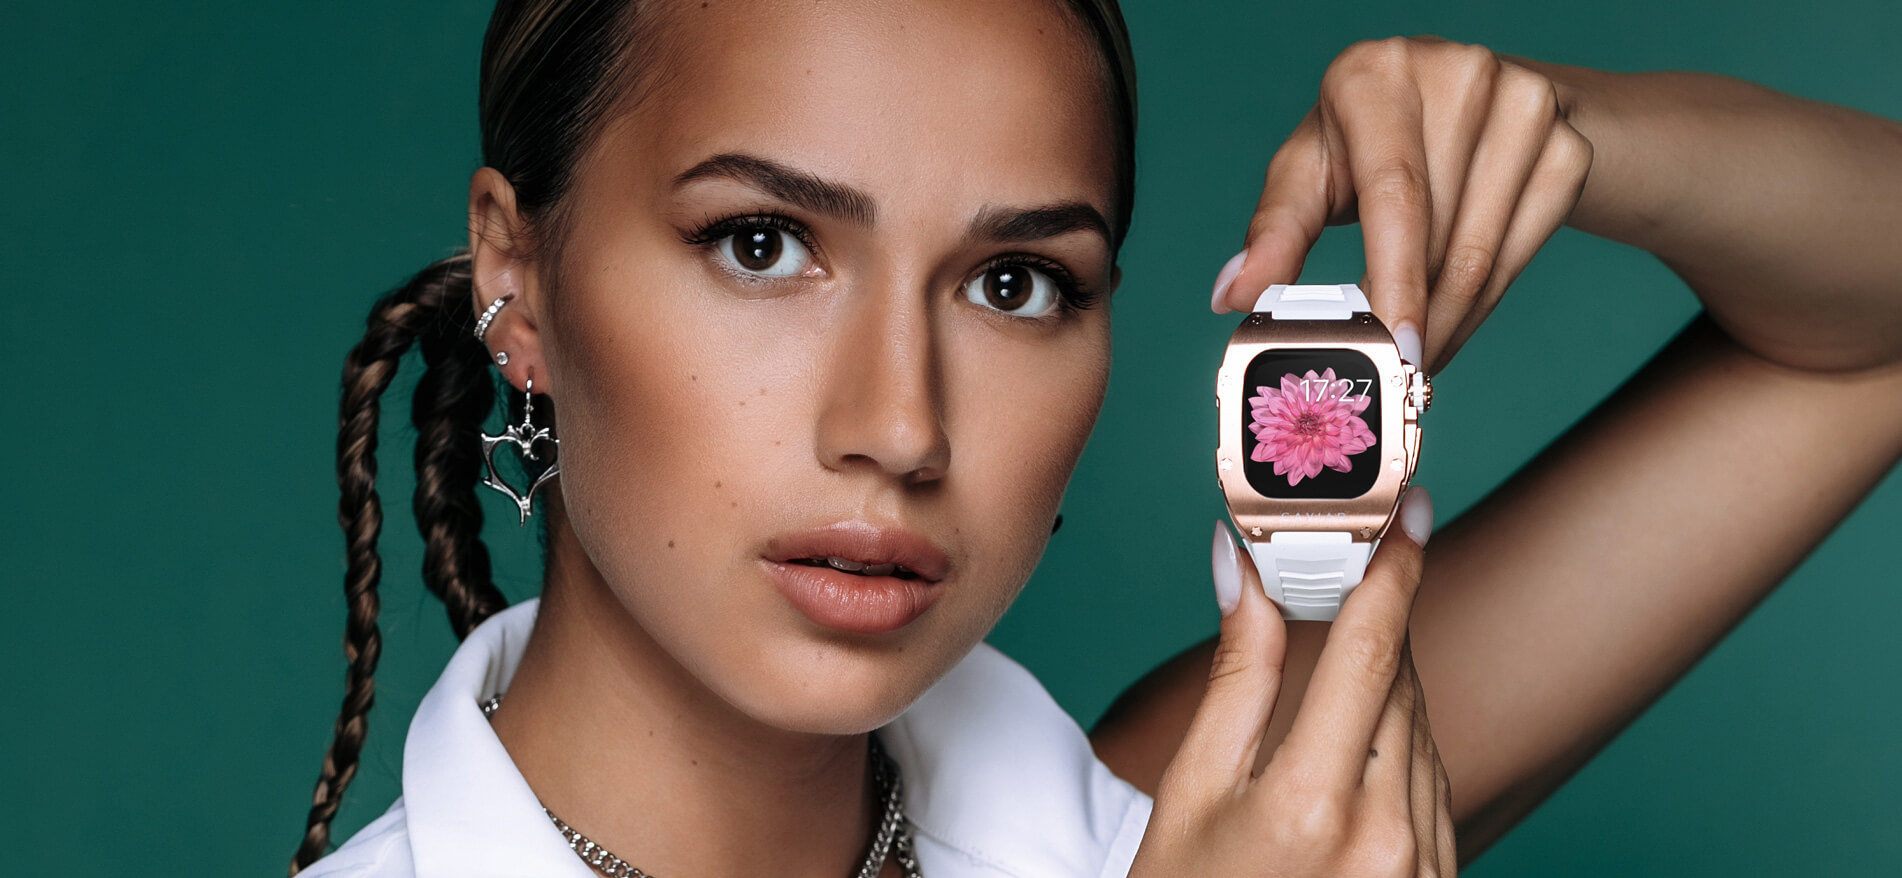 Алина Загитова продемонстрировала Apple Watch в люксовых кейсах Caviar